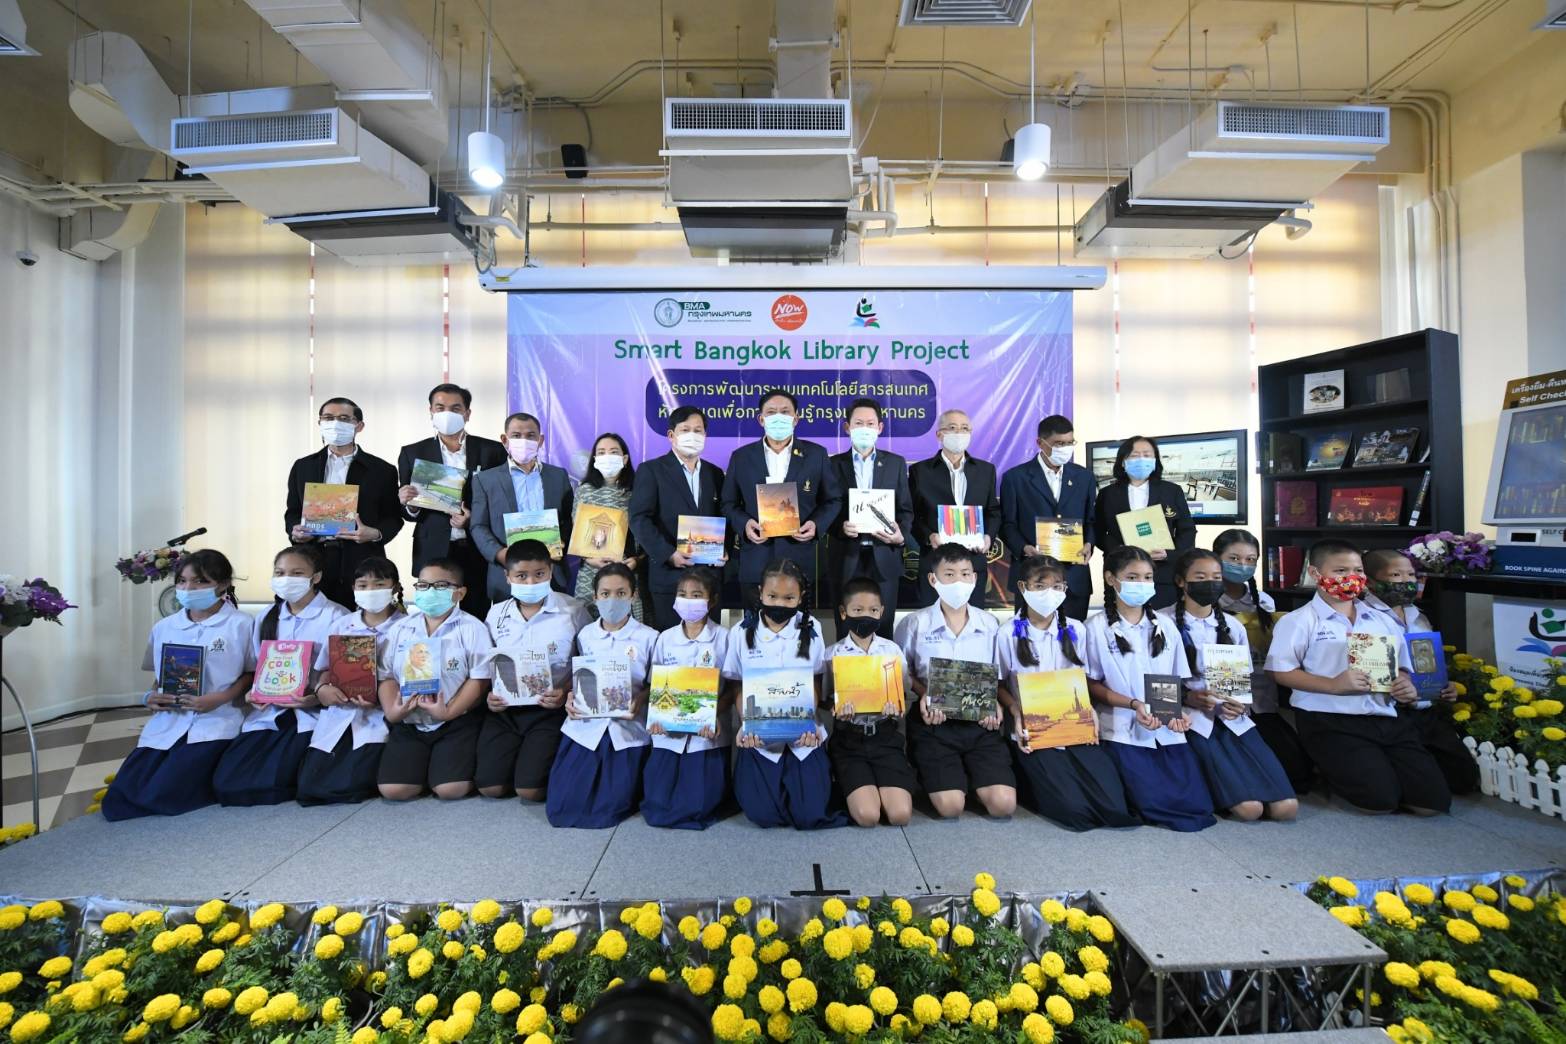 Smart Bangkok Library Project พัฒนาระบบเทคโนโลยีสารสนเทศห้องสมุดเพื่อการเรียนรู้กรุงเทพมหานคร